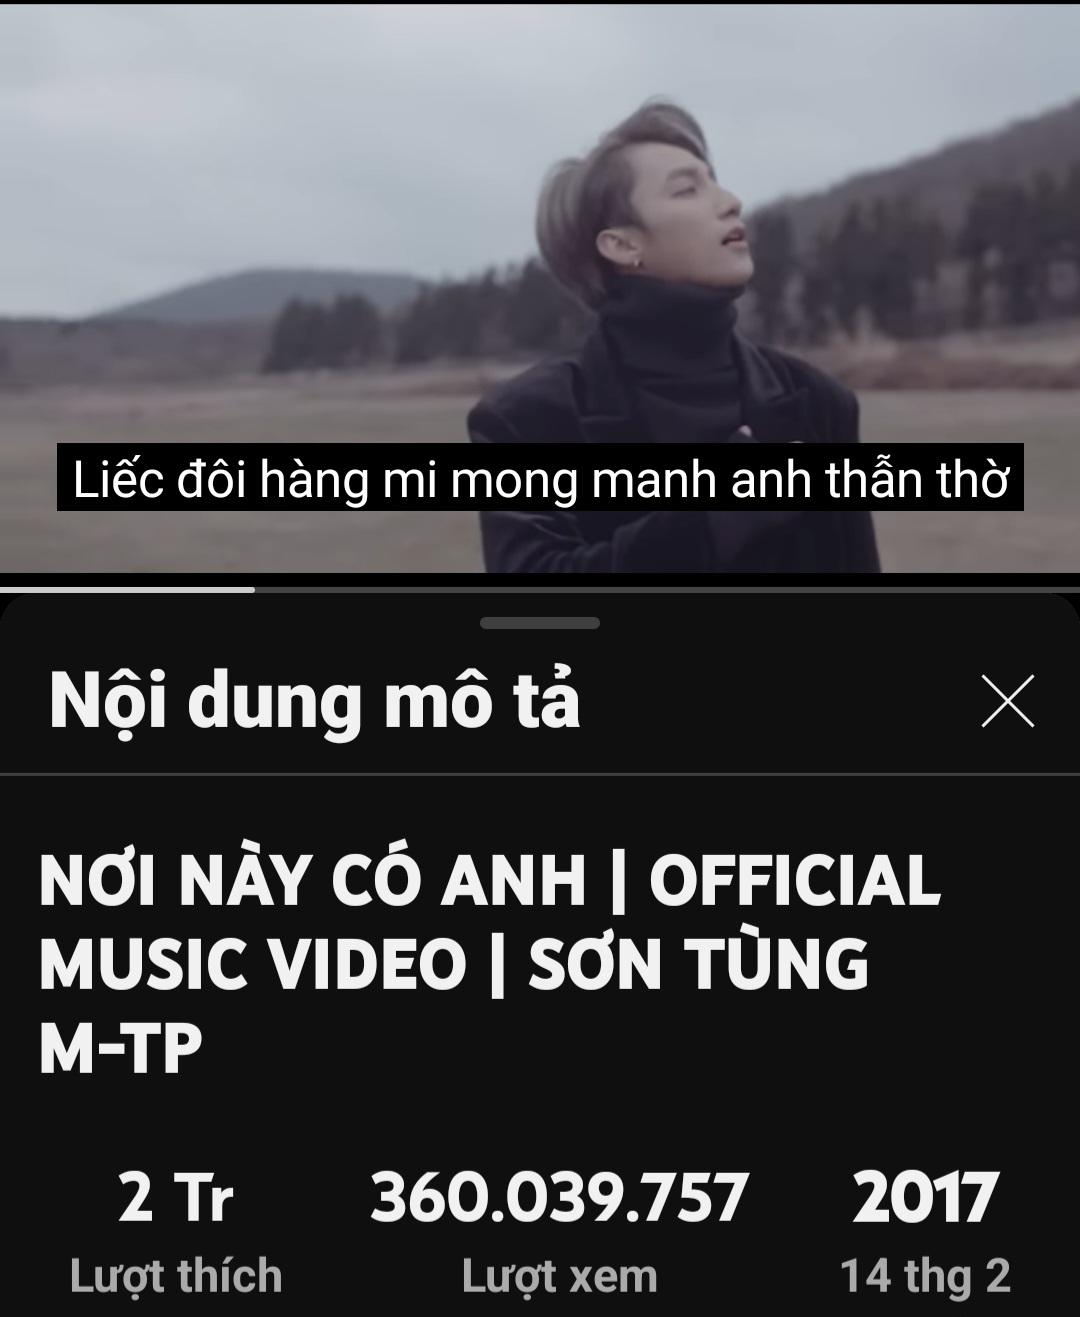 Nhiều MV của ca sĩ Việt Nam có lượt xem nhiều nhất cũng chưa bằng 1 nửa MV 